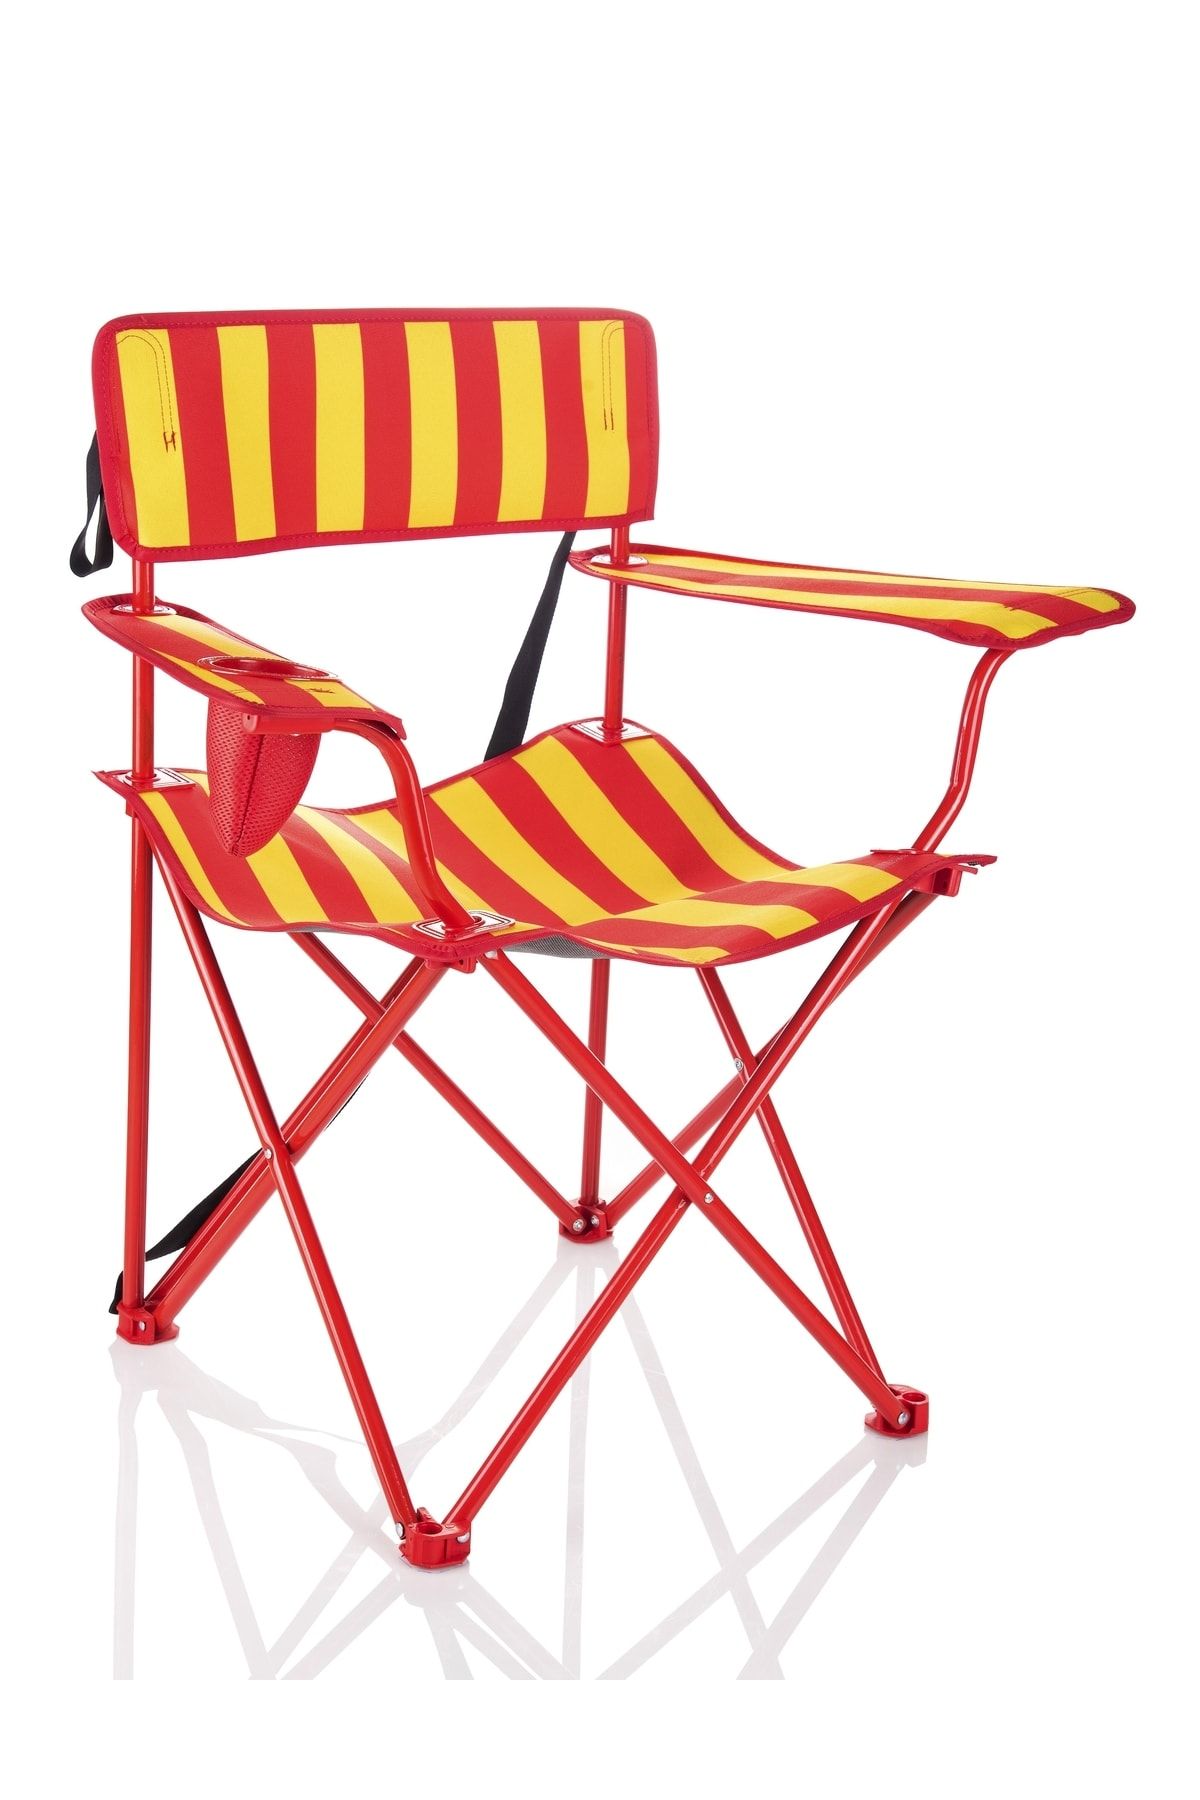 Miras Fans Pro Kamp Sandalyesi , Sarı-kırmızı (2 YIL GARANTİ)